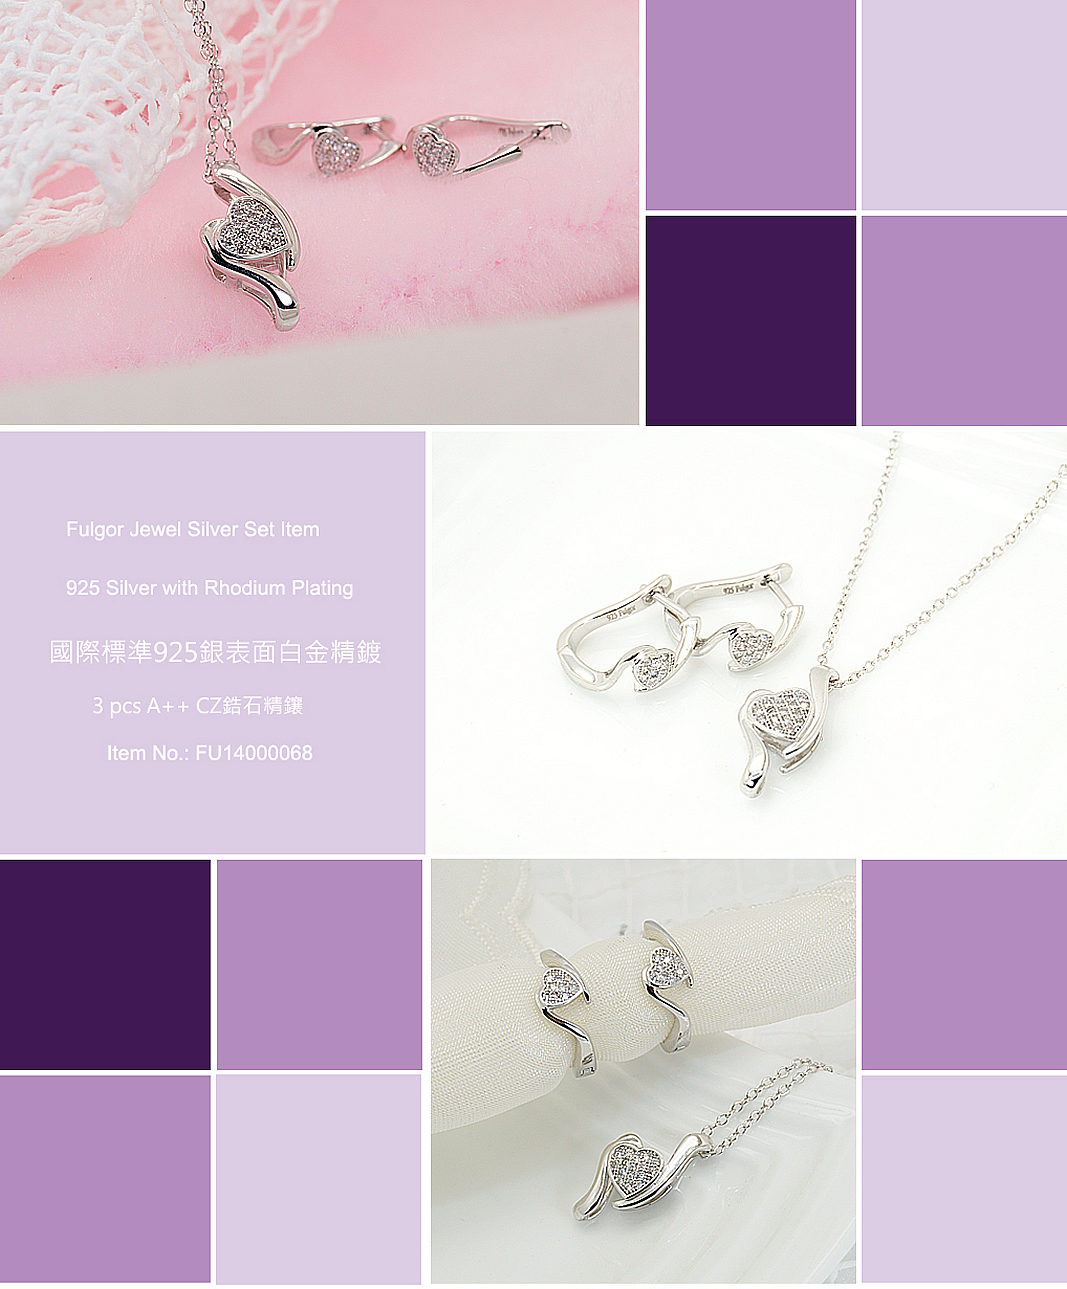 Silver-Earring-necklace-set-FU14000068-FulgorJewel-info.jpg